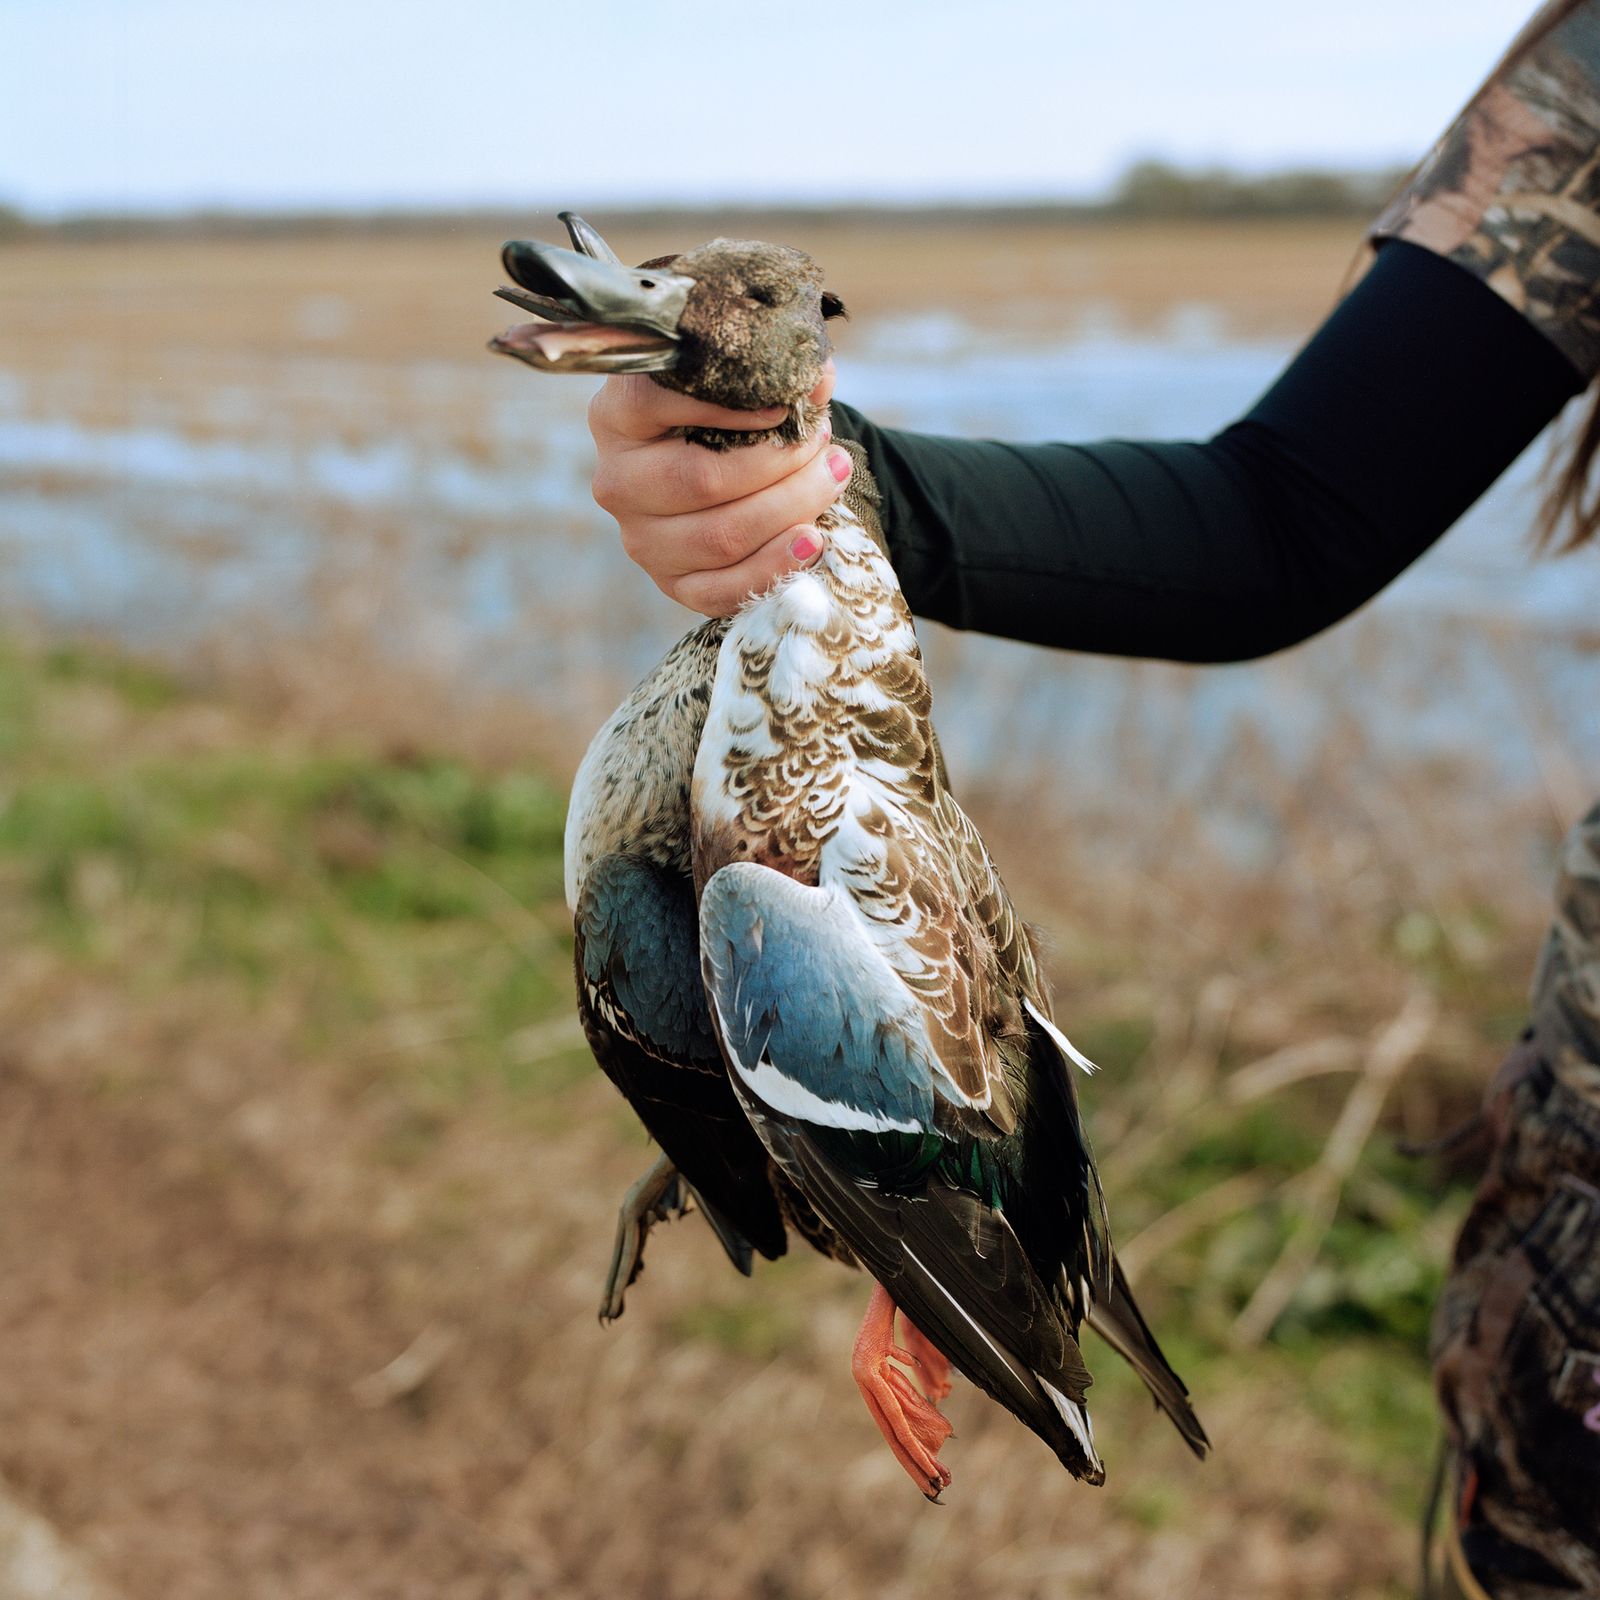 © Camille Farrah Lenain - Beth, 27, holding a dead duck she had harvested earlier than morning in Goldust, Louisiana. November 2019.